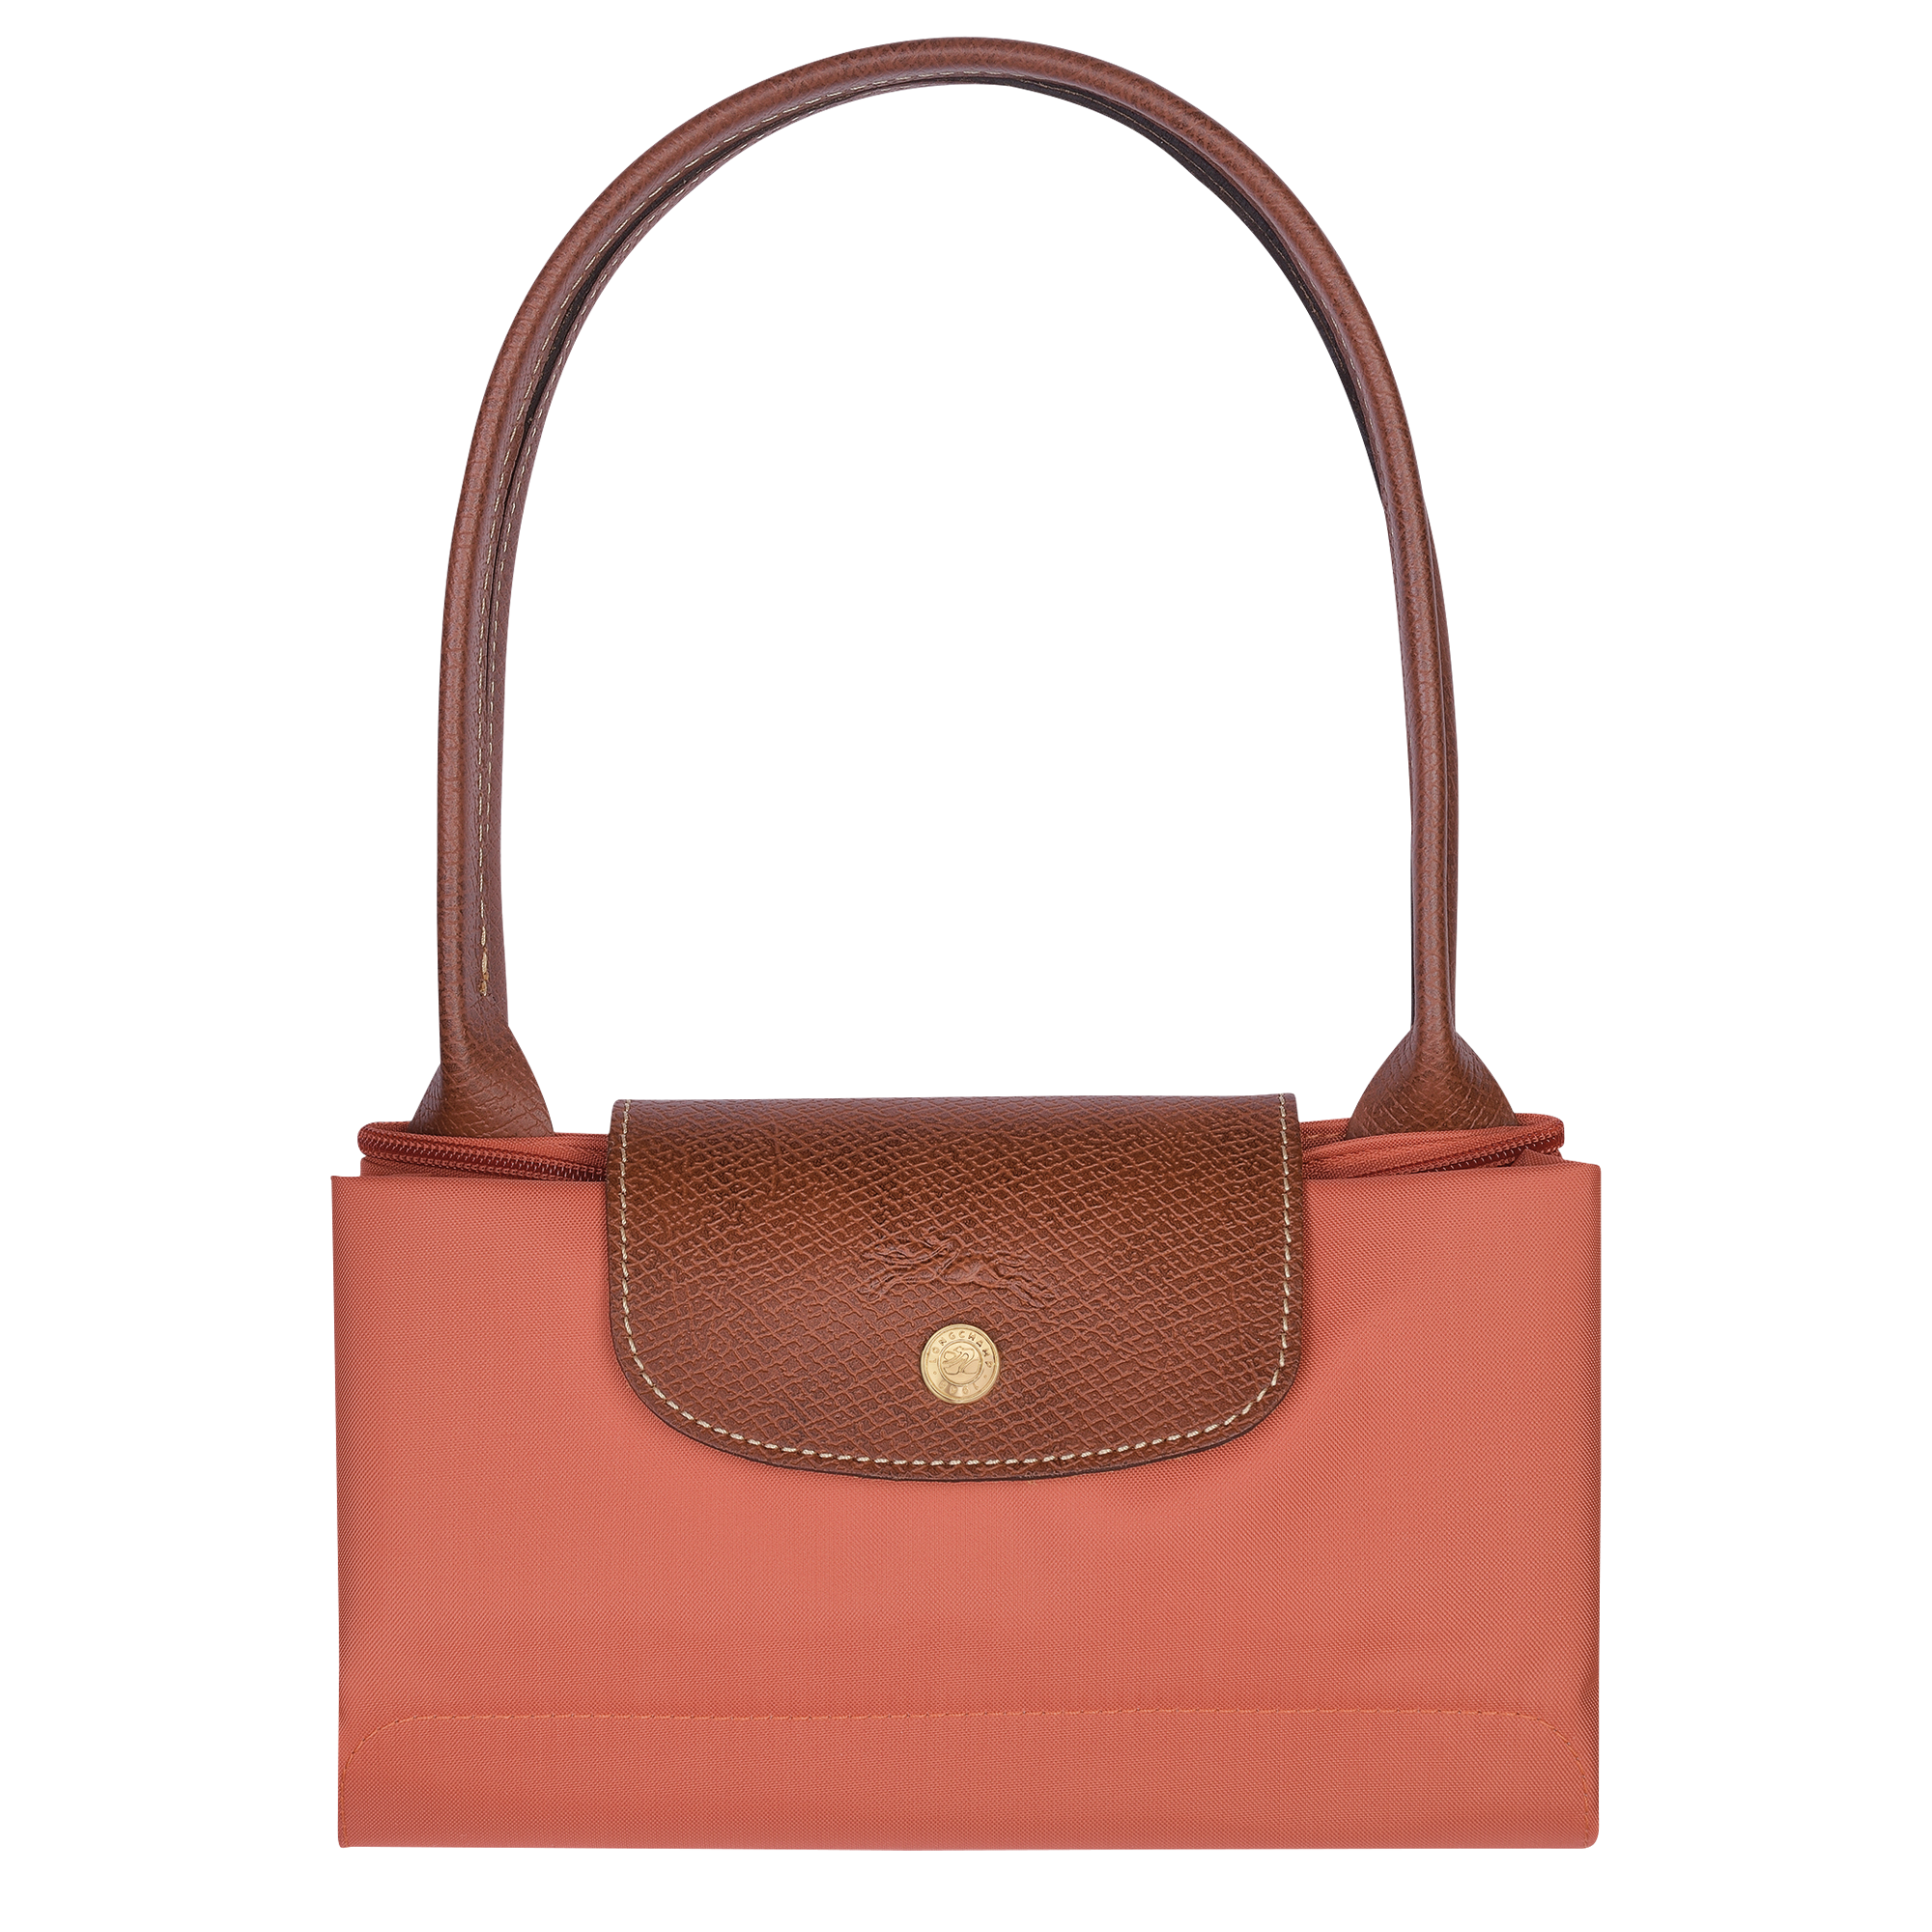 Longchamp Small Roseau Canvas Bucket Bag - Neutrals for Women